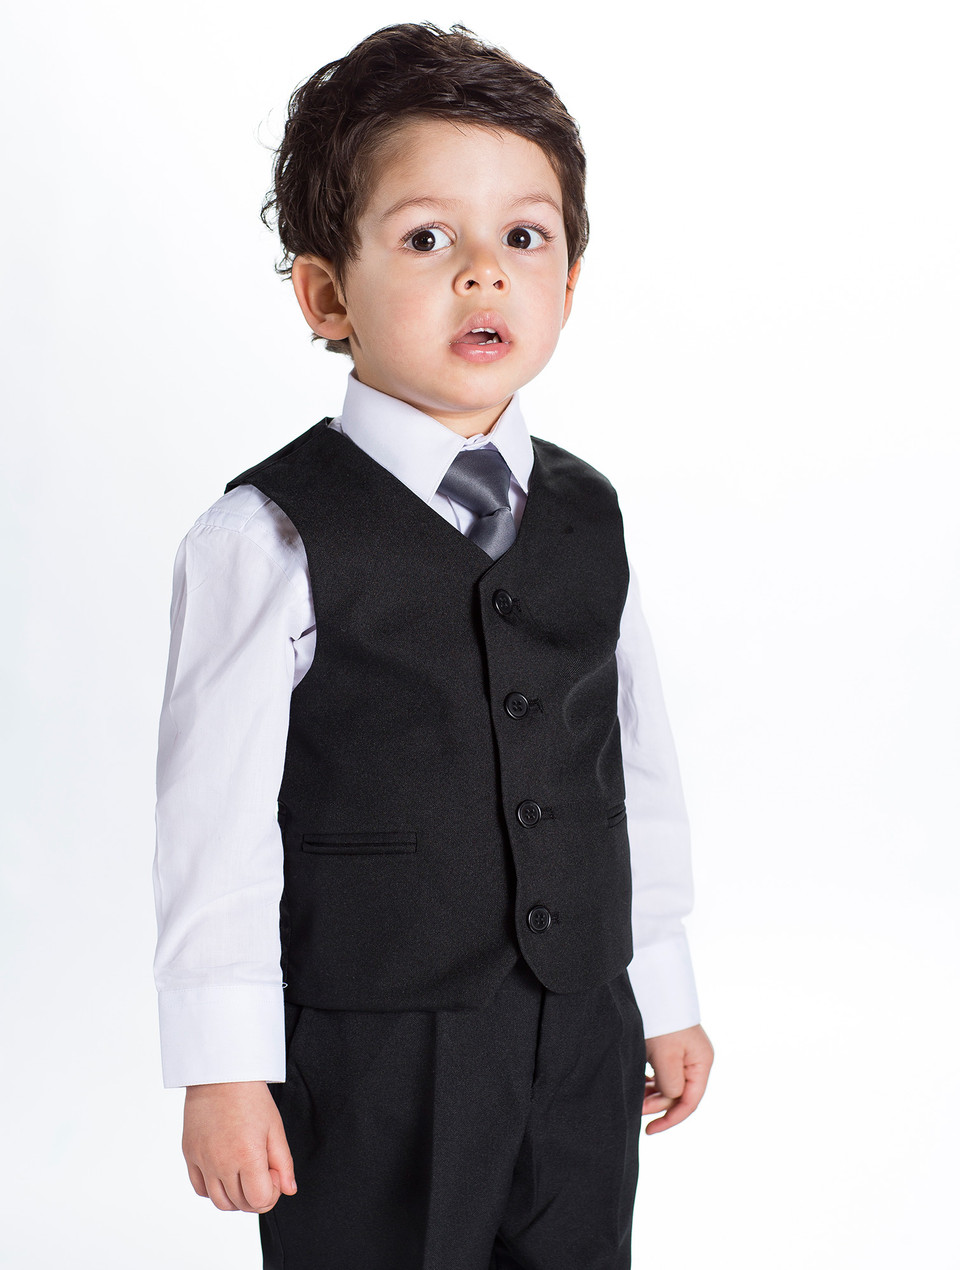 Baby boys black suit | Black wedding suit | Black boys suit | Archie